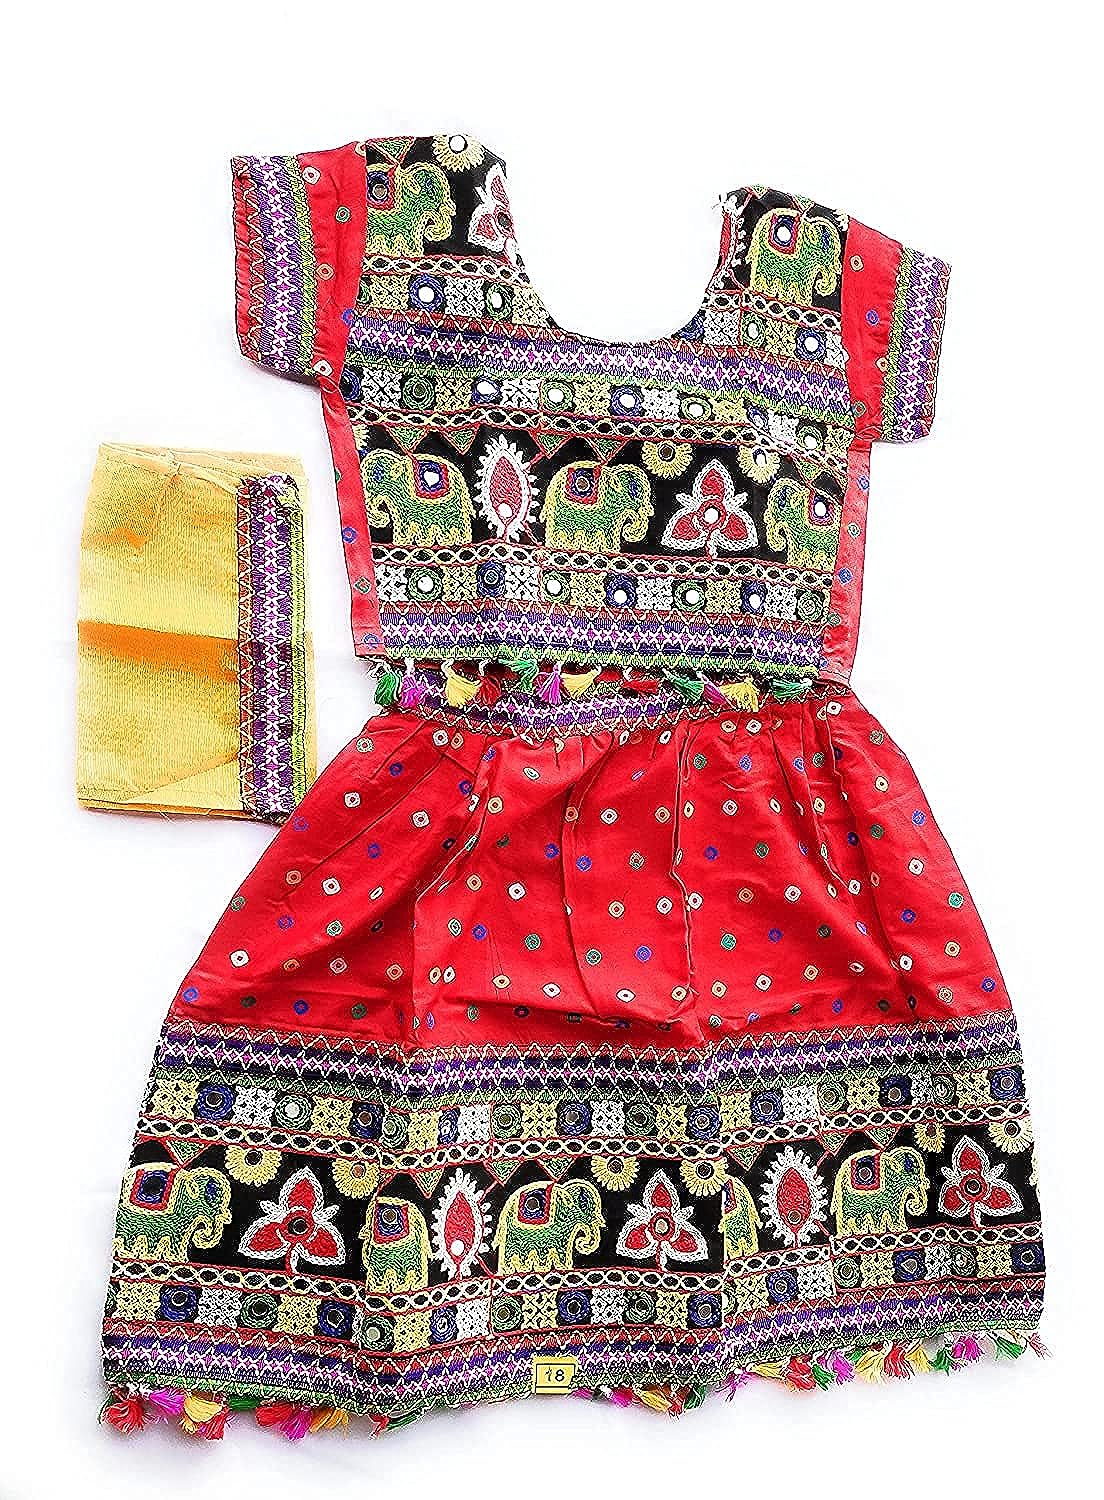 Radha dress, Radha dress for Janmashtami, Radha makeup, radha dress up for  girl | Fancy dress for kids, Dresses kids girl, Baby girl dress patterns